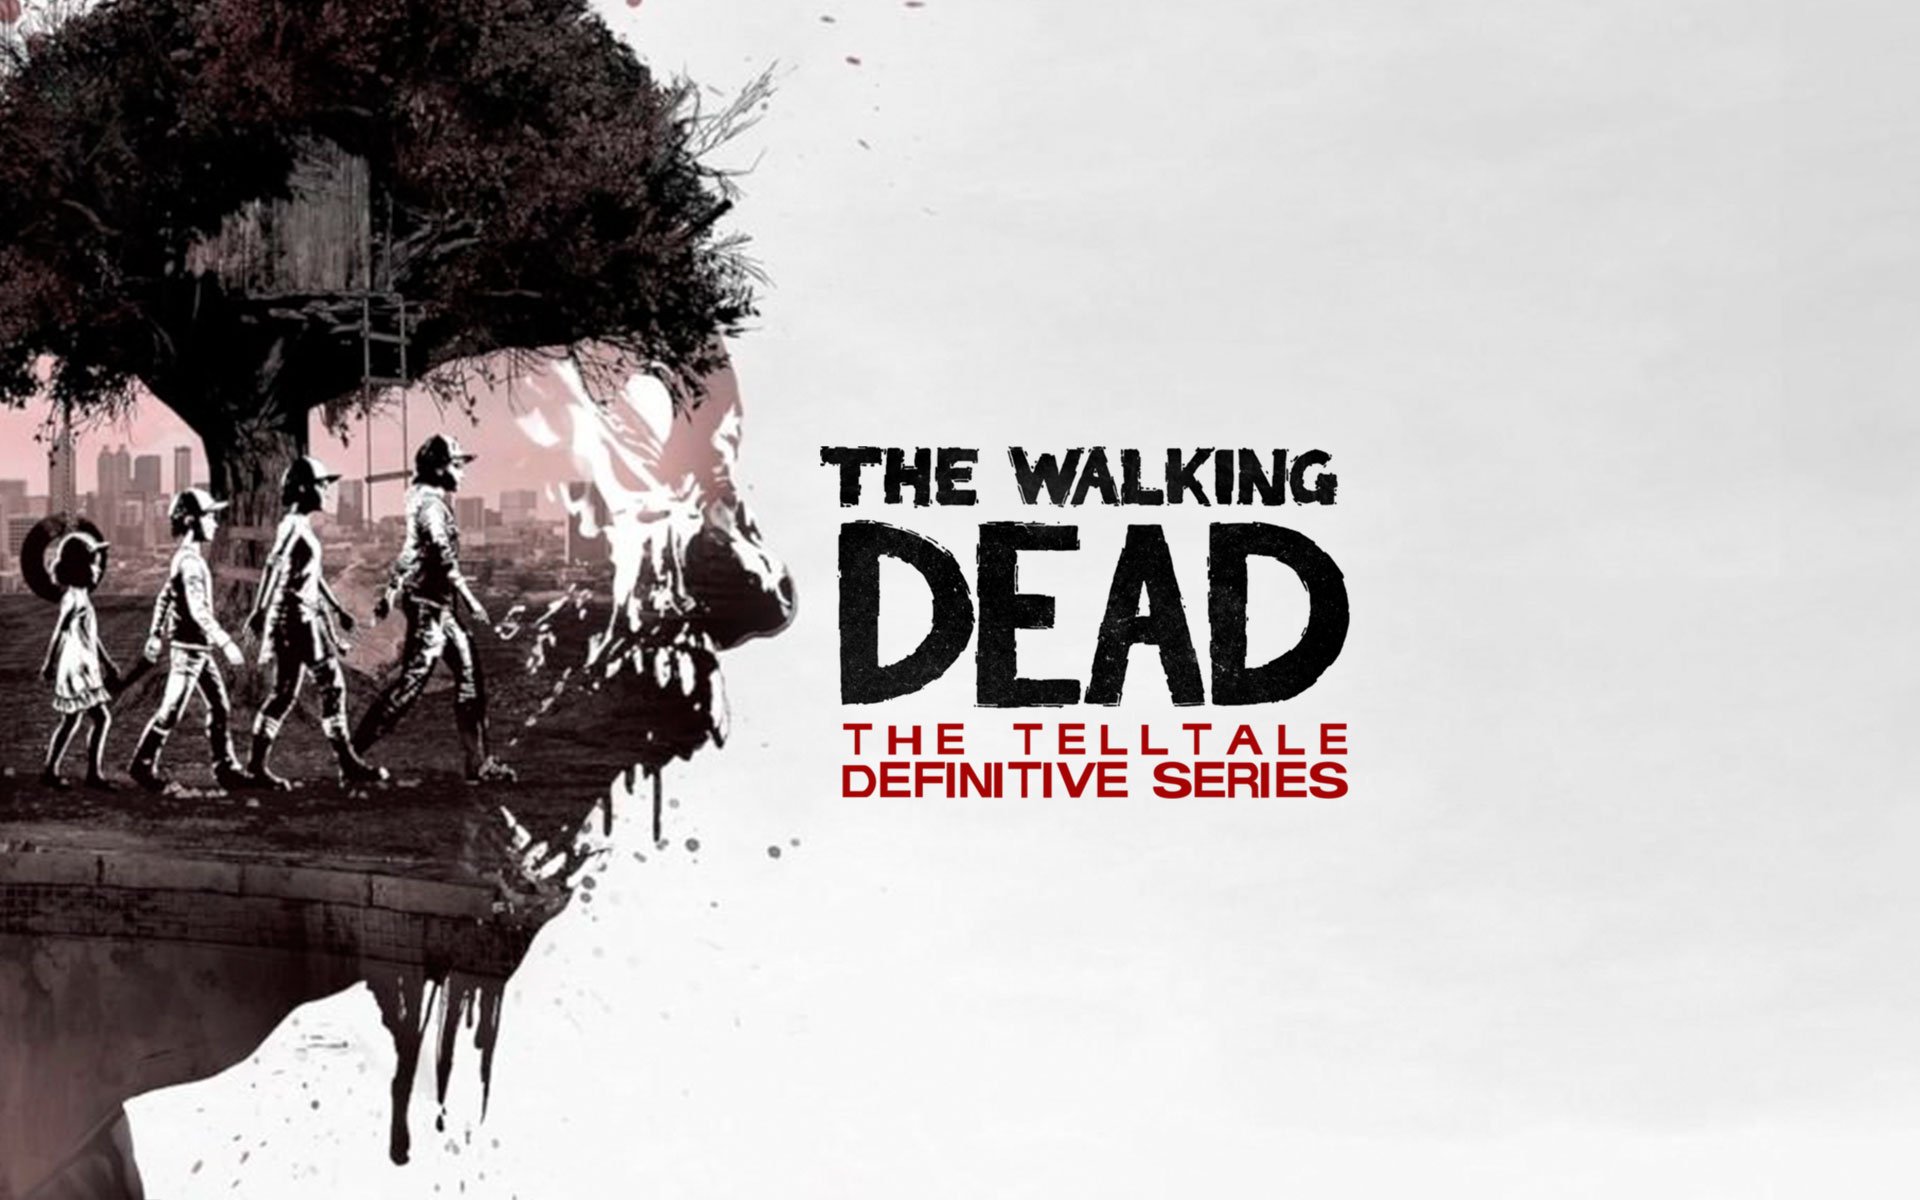 Compre The Walking Dead a partir de R$ 249.50